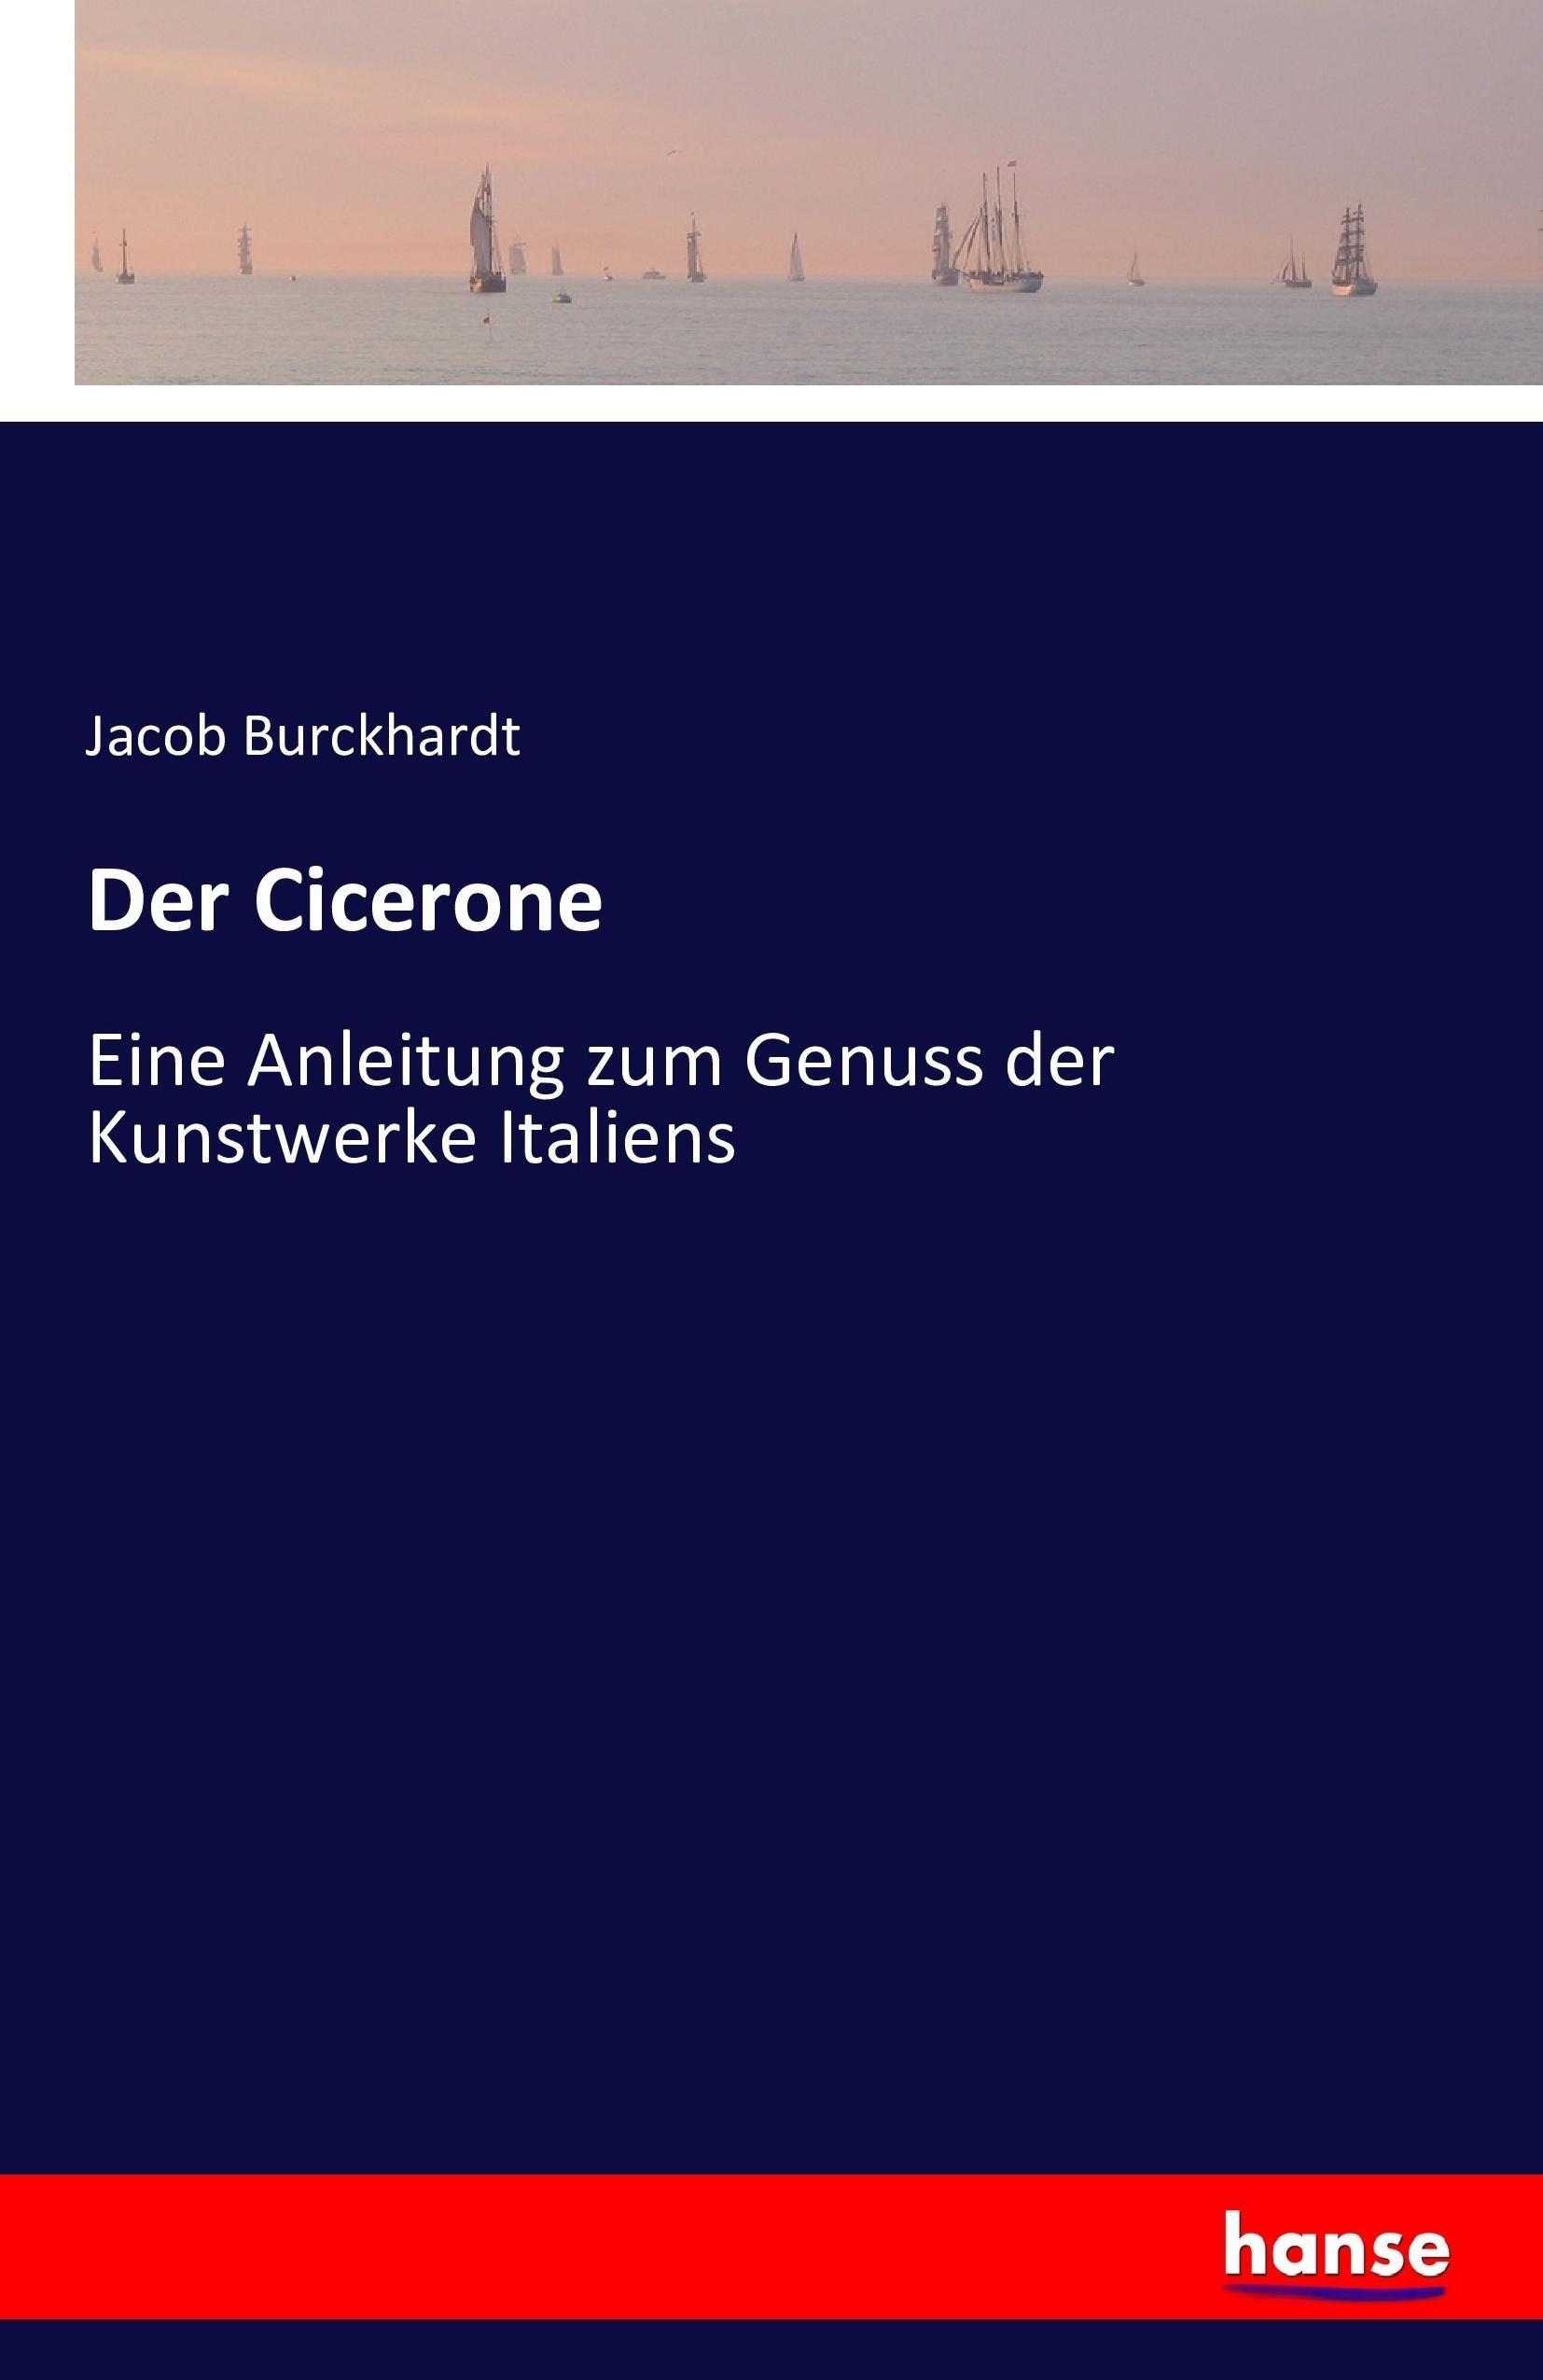 Der Cicerone | Eine Anleitung zum Genuss der Kunstwerke Italiens | Jacob Burckhardt | Taschenbuch | Paperback | 464 S. | Deutsch | 2016 | hansebooks | EAN 9783742849977 - Burckhardt, Jacob